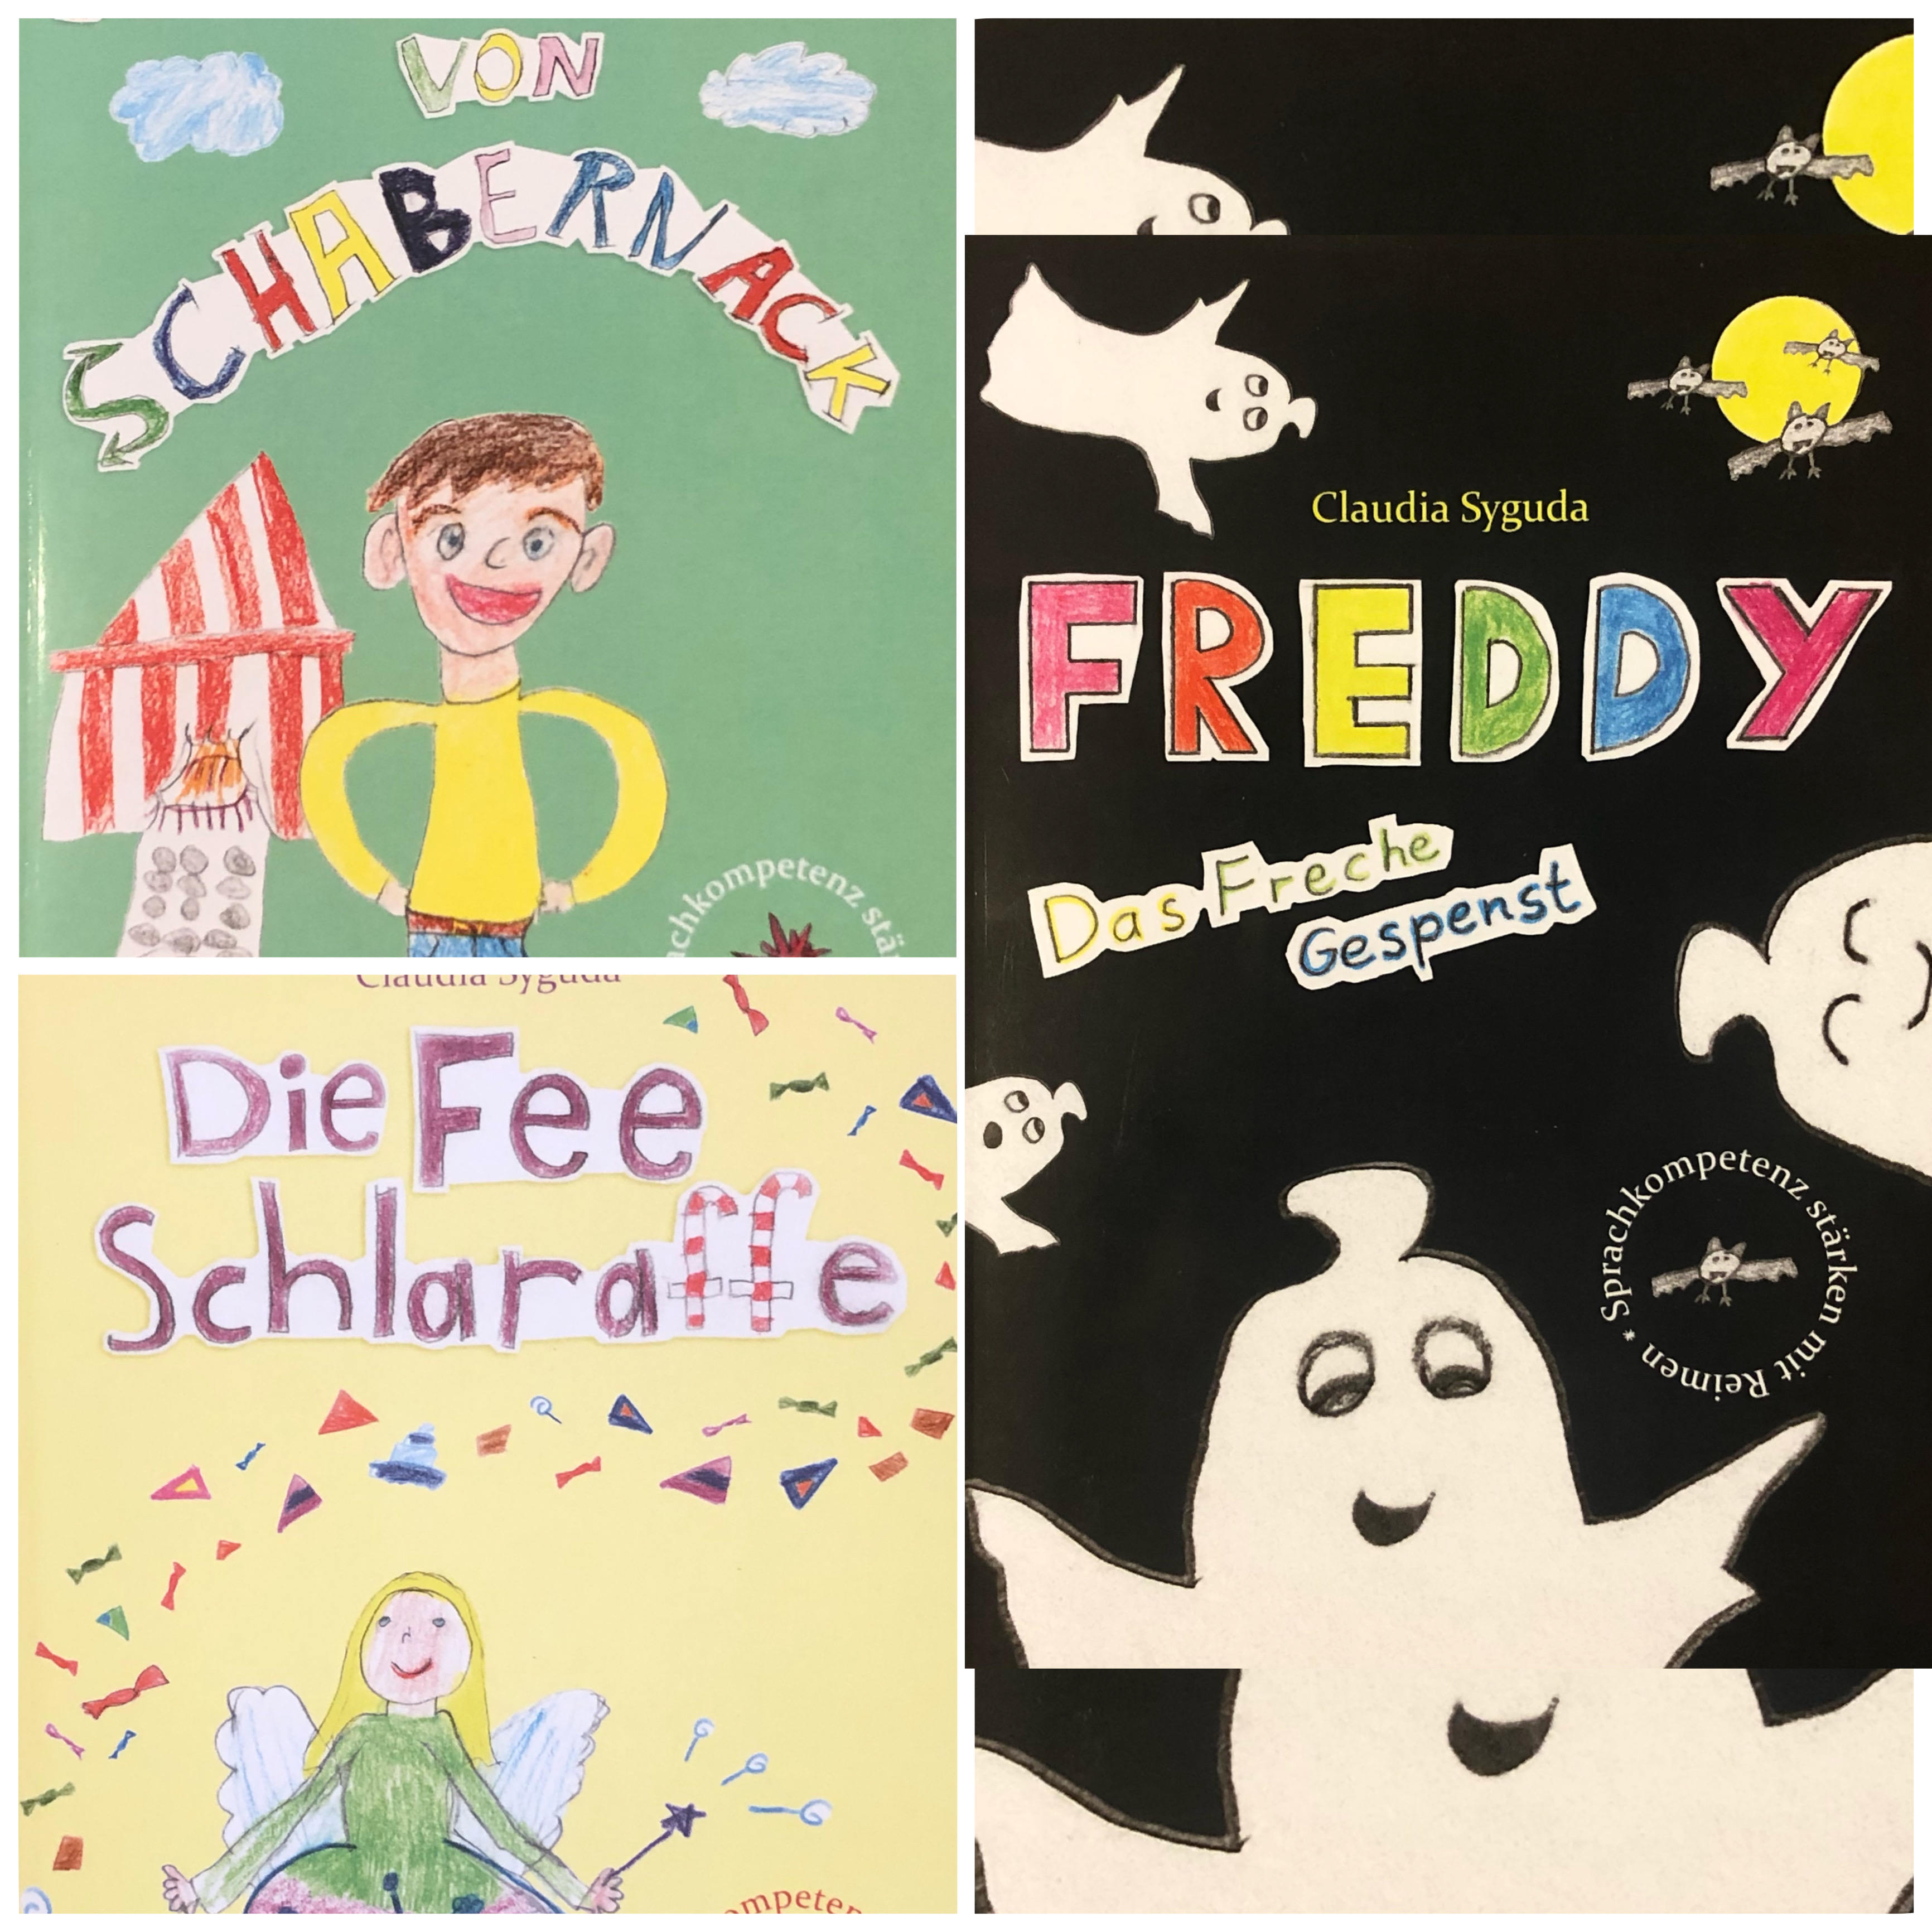 Drei Kinderbücher voller Reime: der freche Freddy, Ritter Max und die Fee Schlaraffe